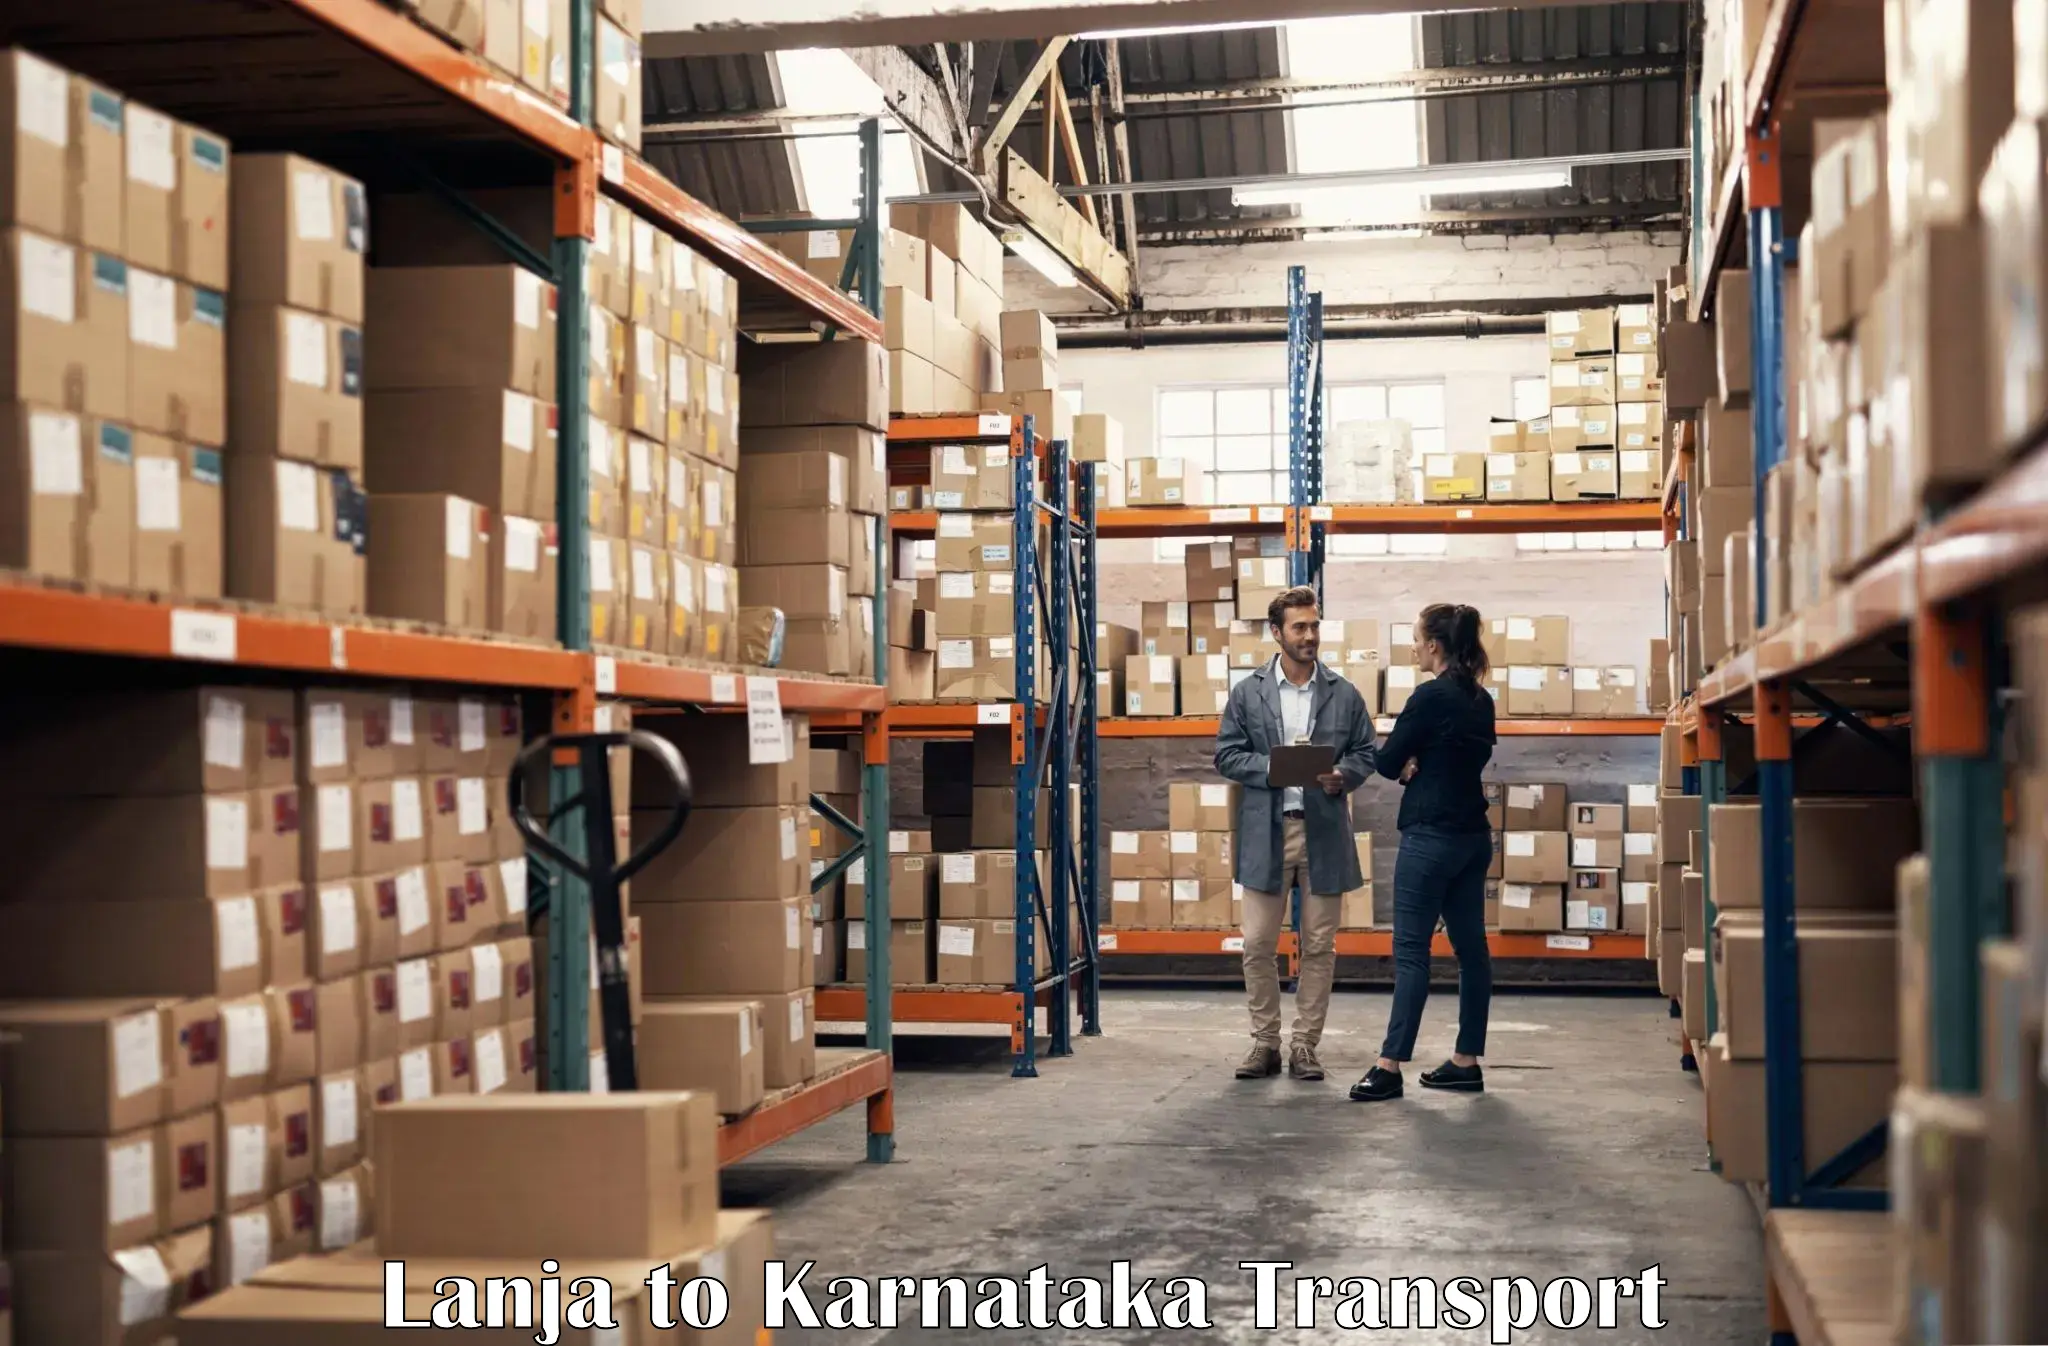 Interstate transport services Lanja to Karnataka